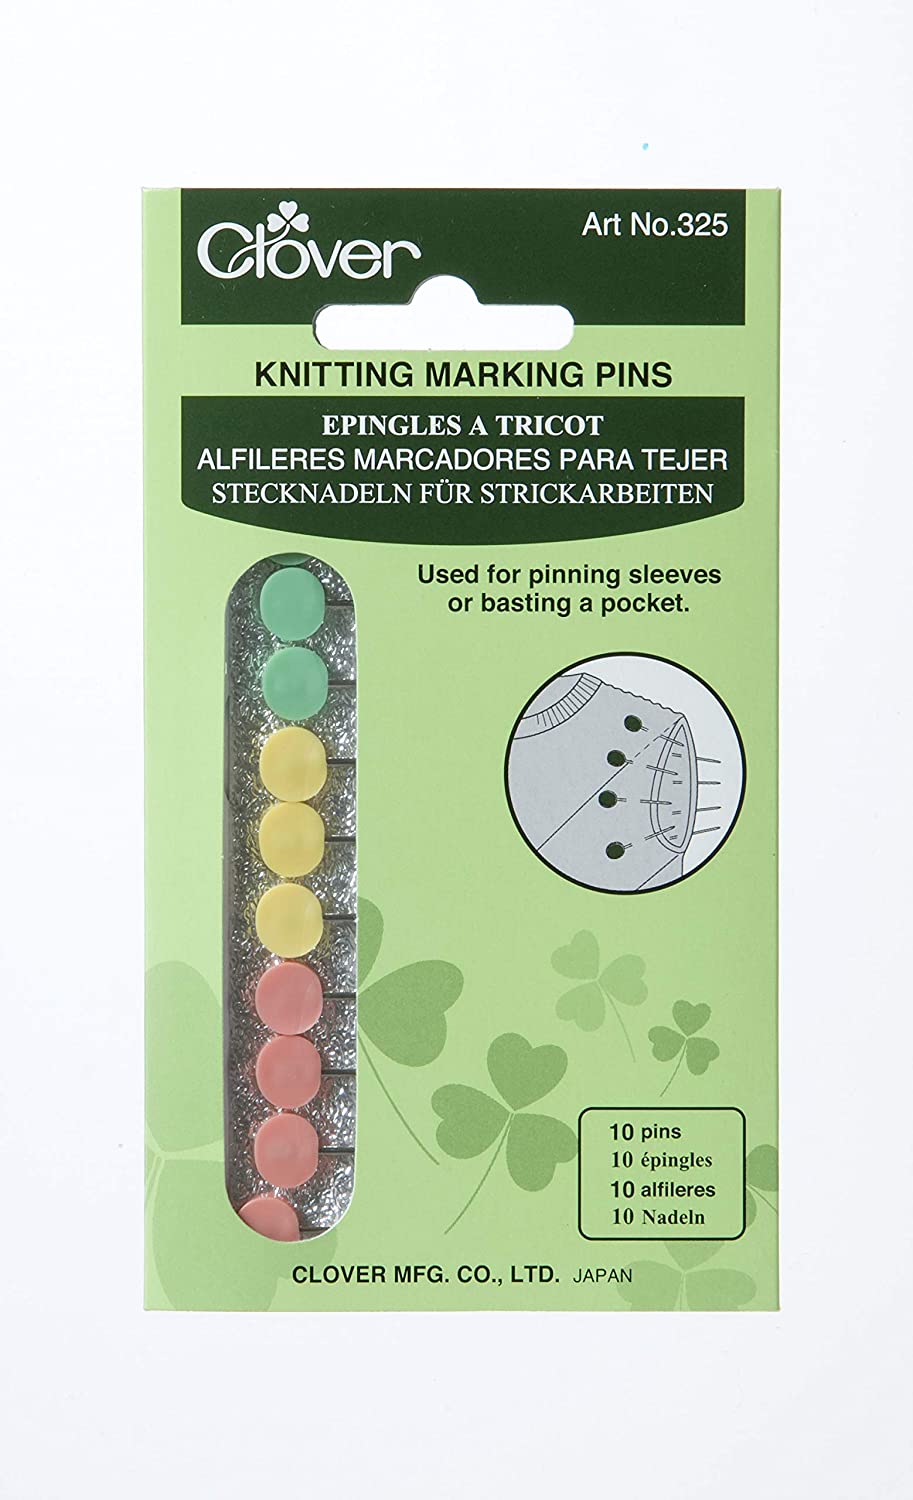 Knitting Marking Pins